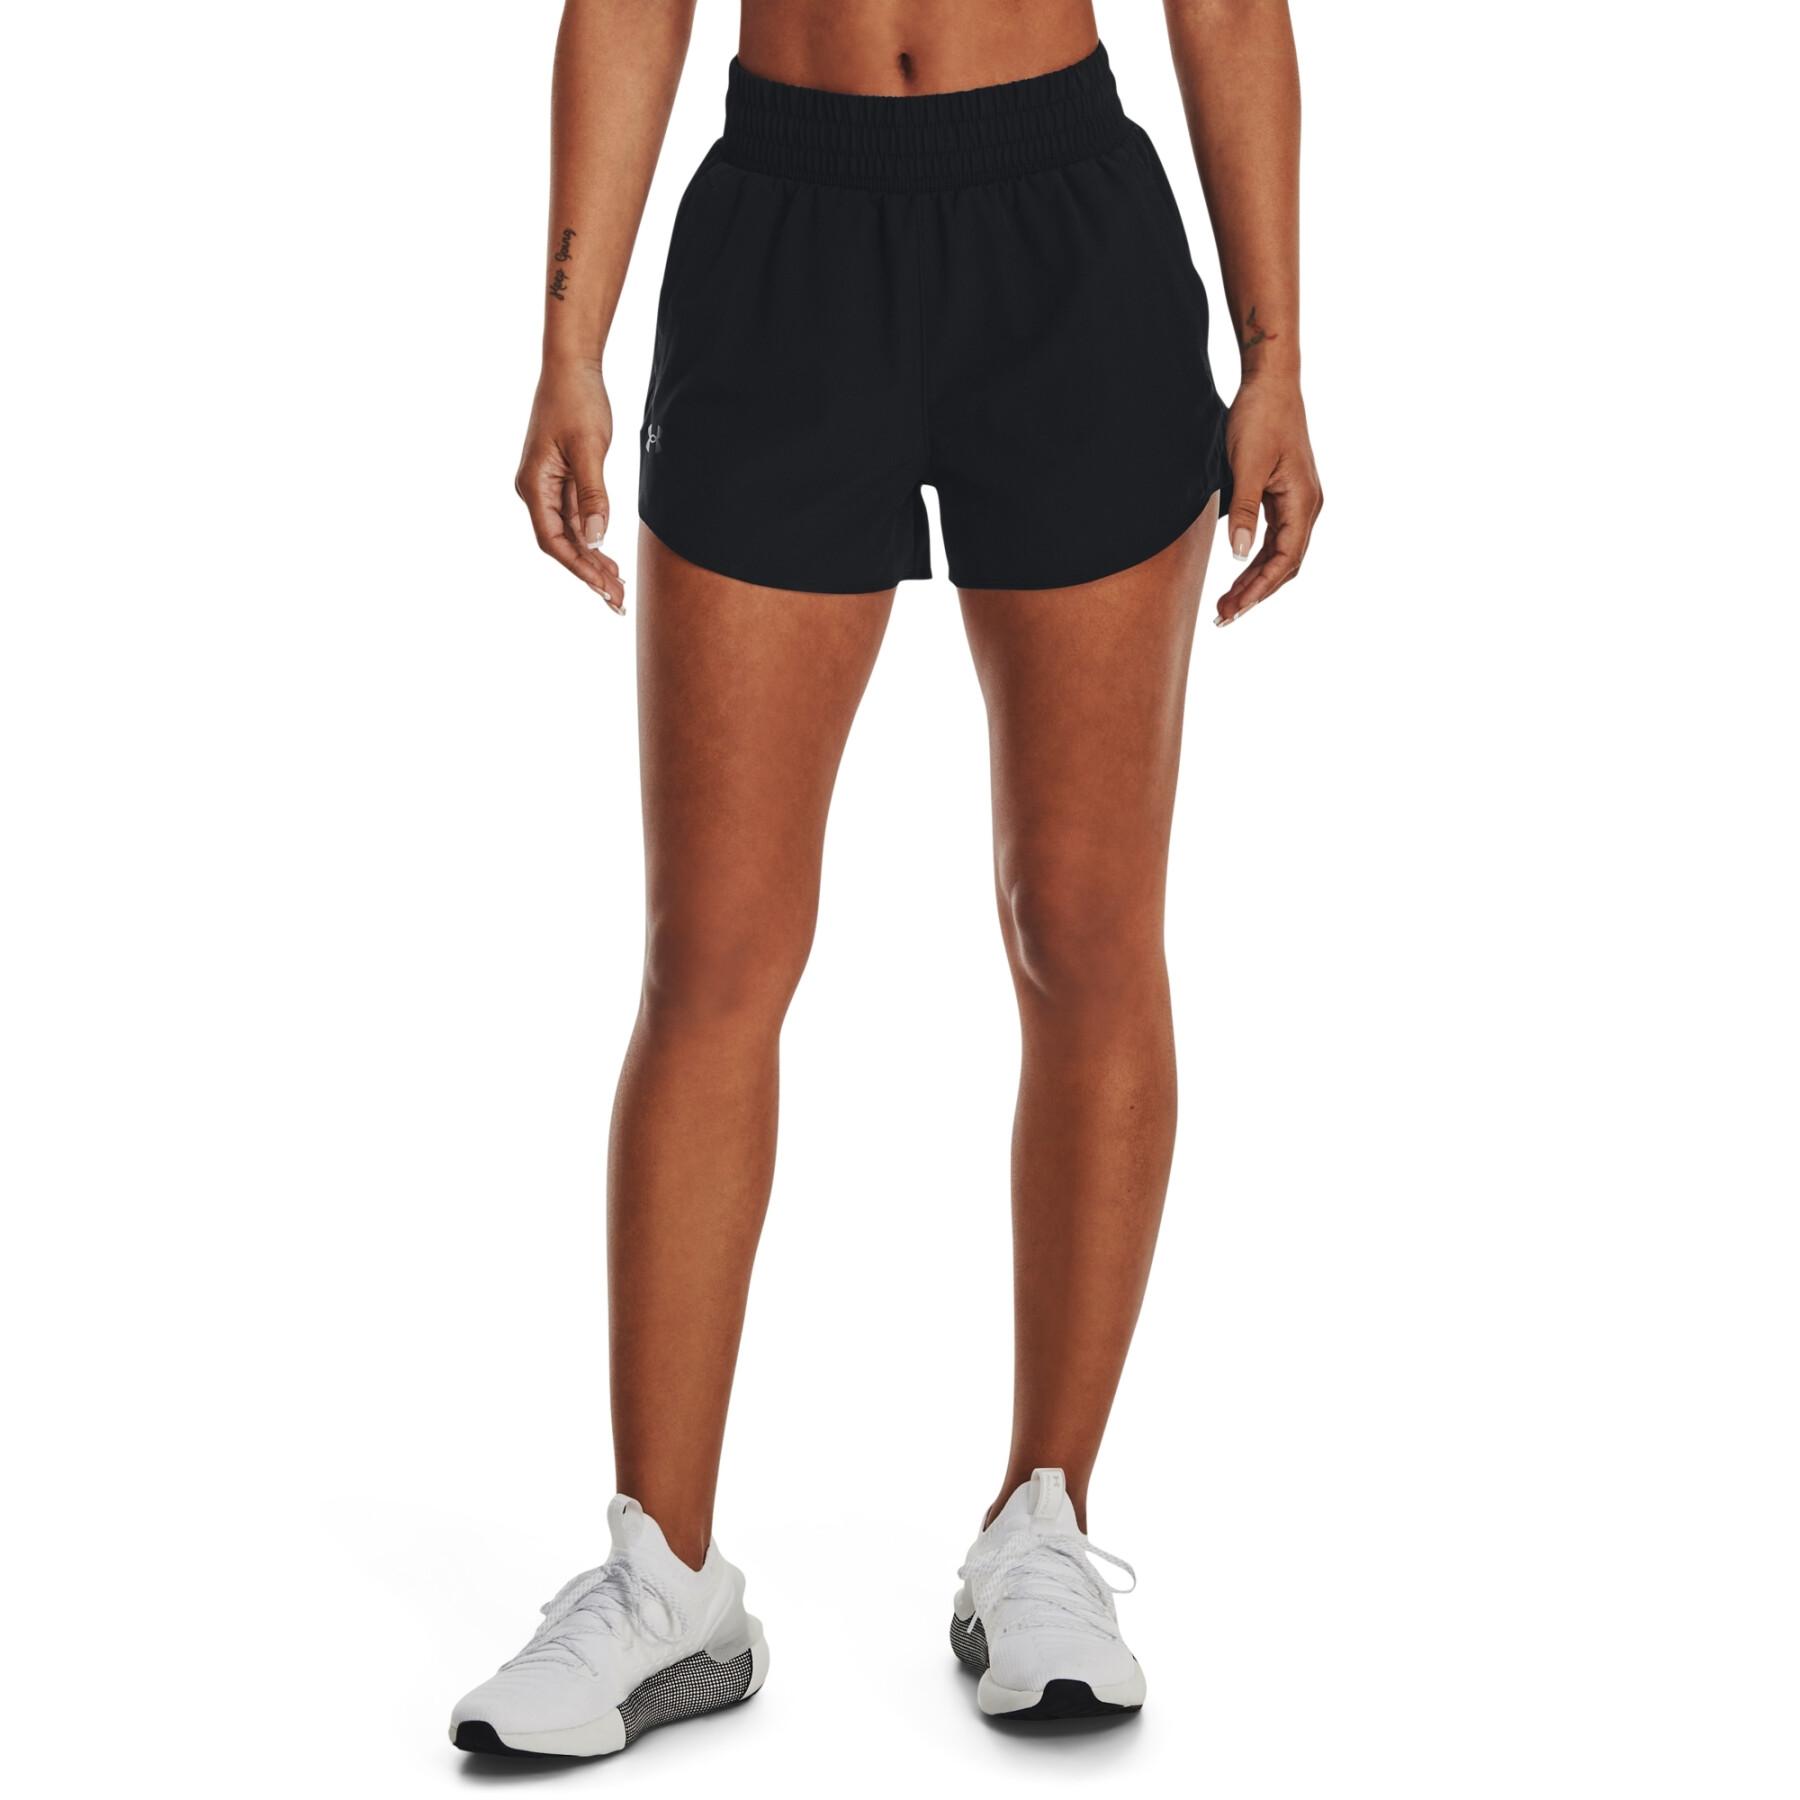 für Fitness - Under Shorts - gewebte Shorts - Frauen 3-in-1 Damenbekleidung Armour Flex